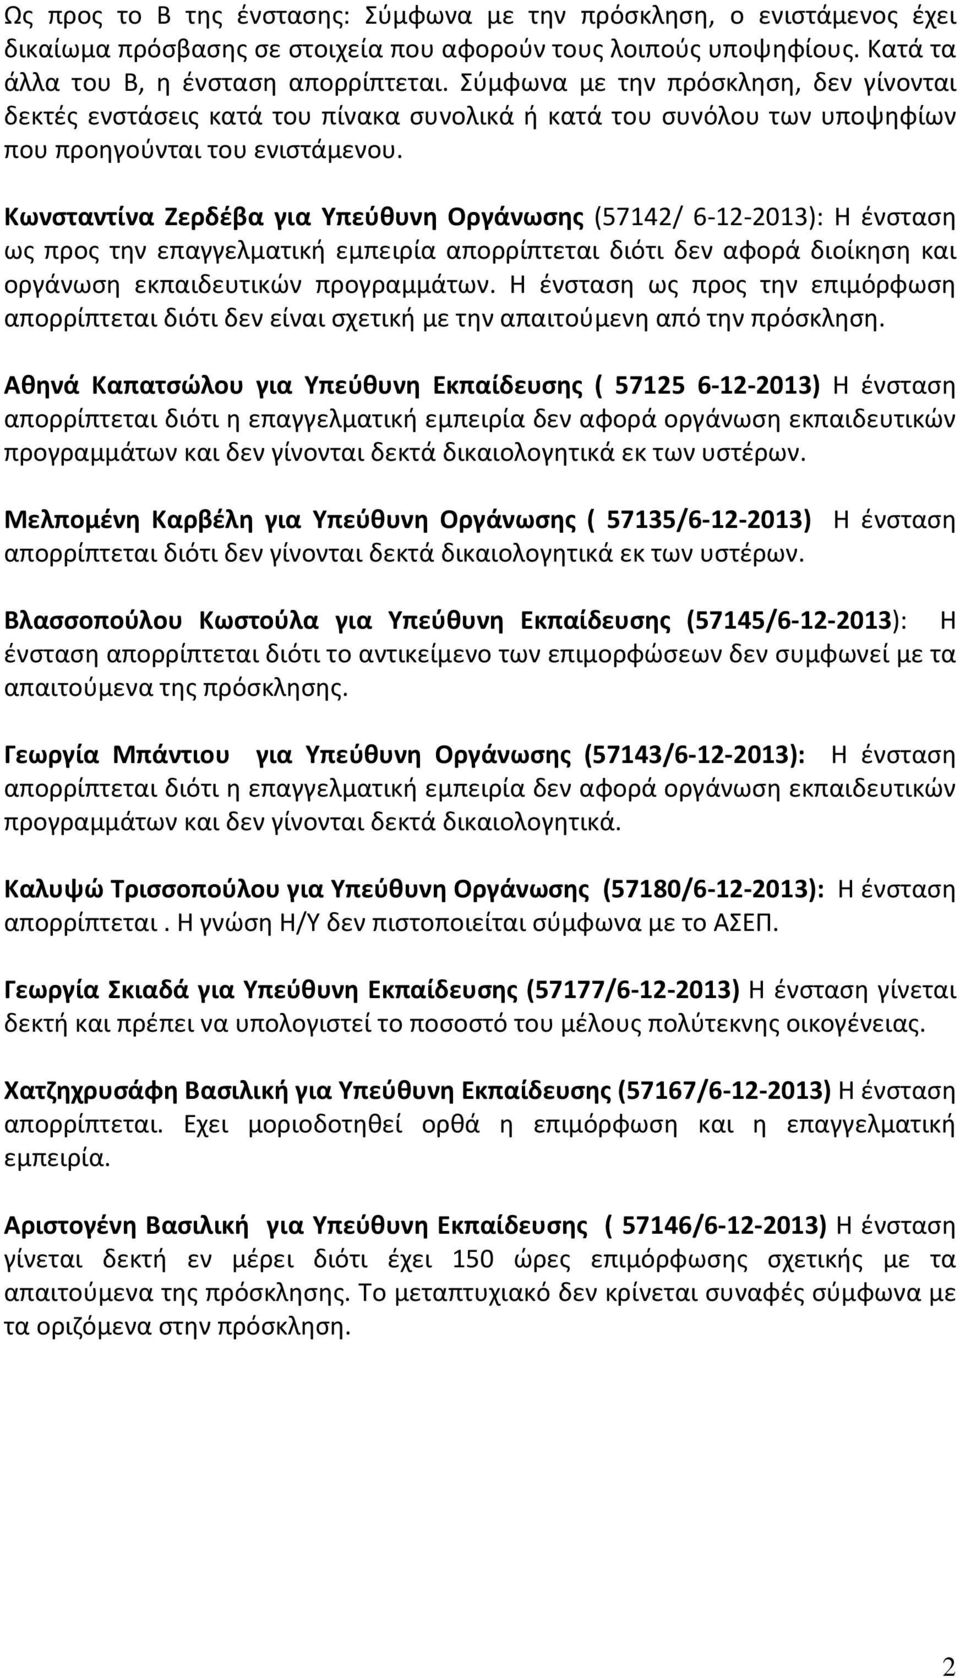 Κωνσταντίνα Ζερδέβα για Υπεύθυνη Οργάνωσης (57142/ 6-12-2013): Η ένσταση ως προς την επαγγελματική εμπειρία απορρίπτεται διότι δεν αφορά διοίκηση και οργάνωση εκπαιδευτικών προγραμμάτων.